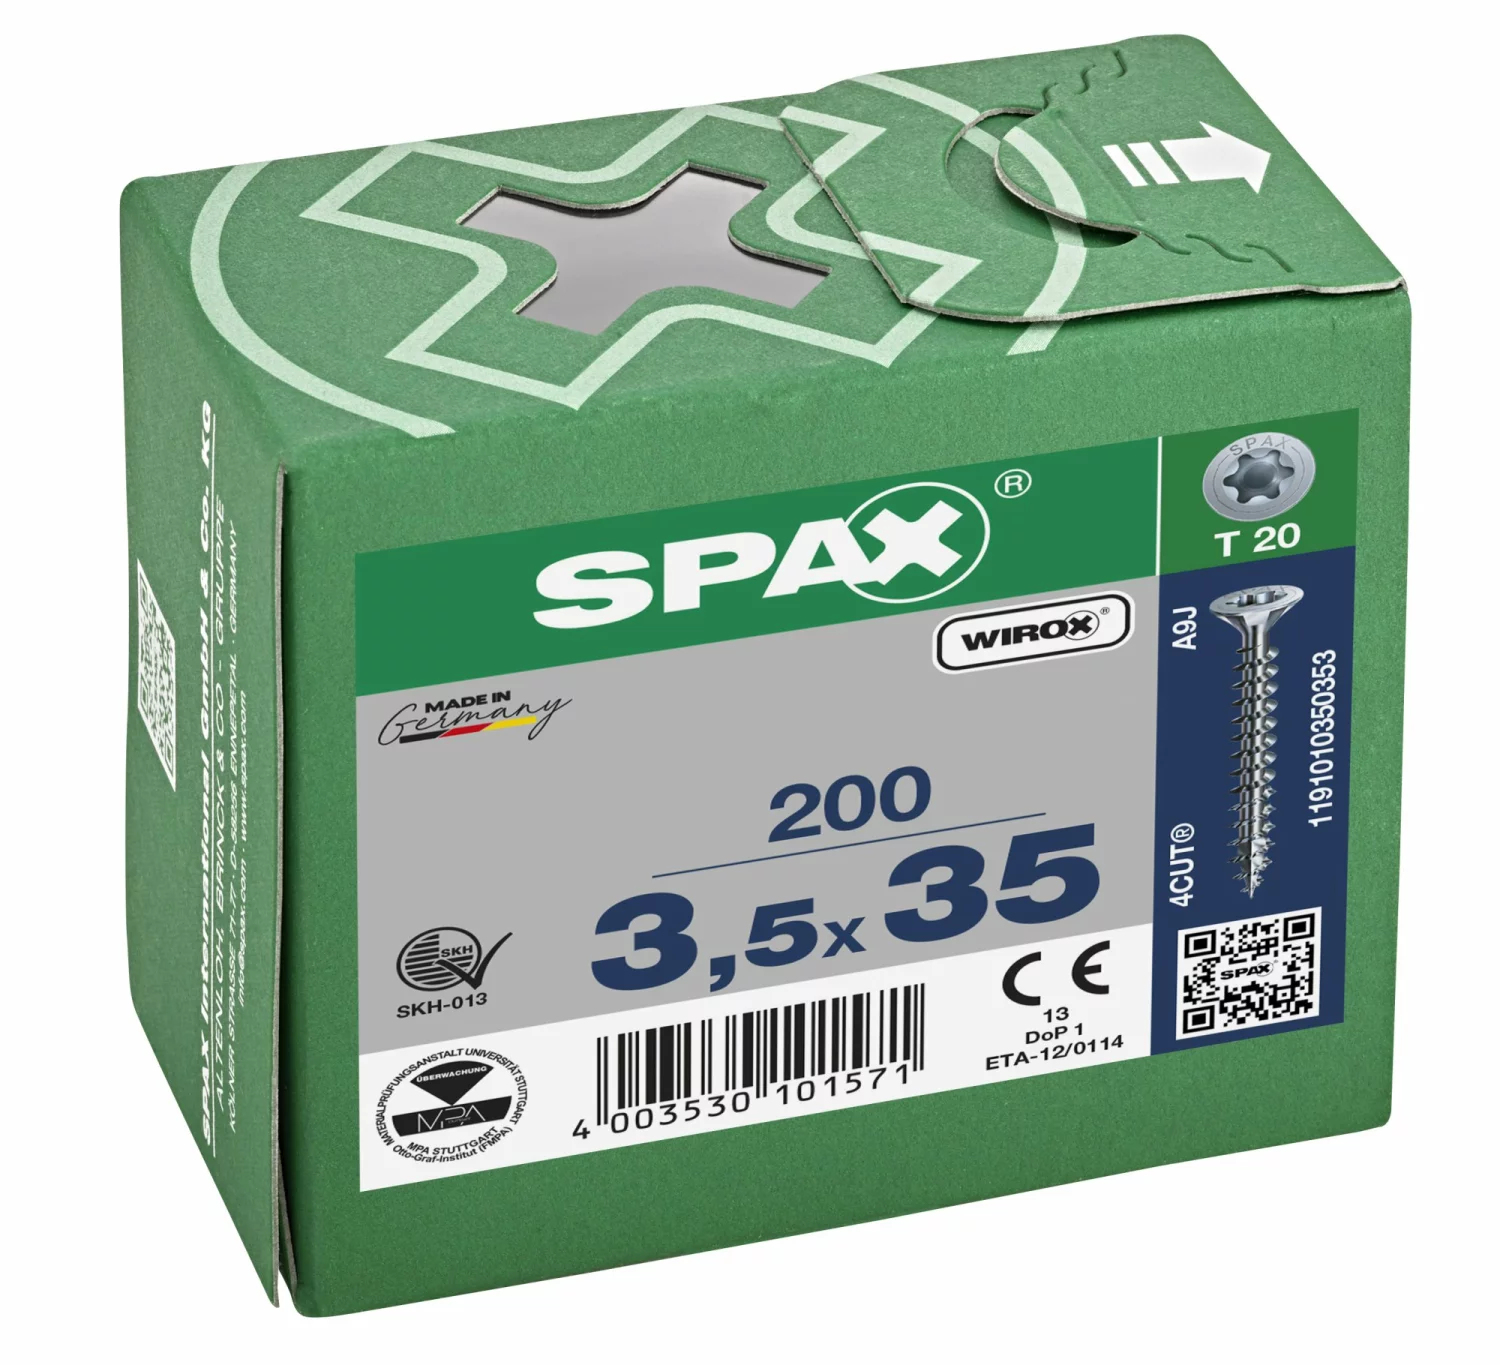 SPAX 1191010350353 Universele schroef, Verzonken kop, 3.5 x 35, Voldraad, T-STAR plus T20 - WIROX - 200 stuks